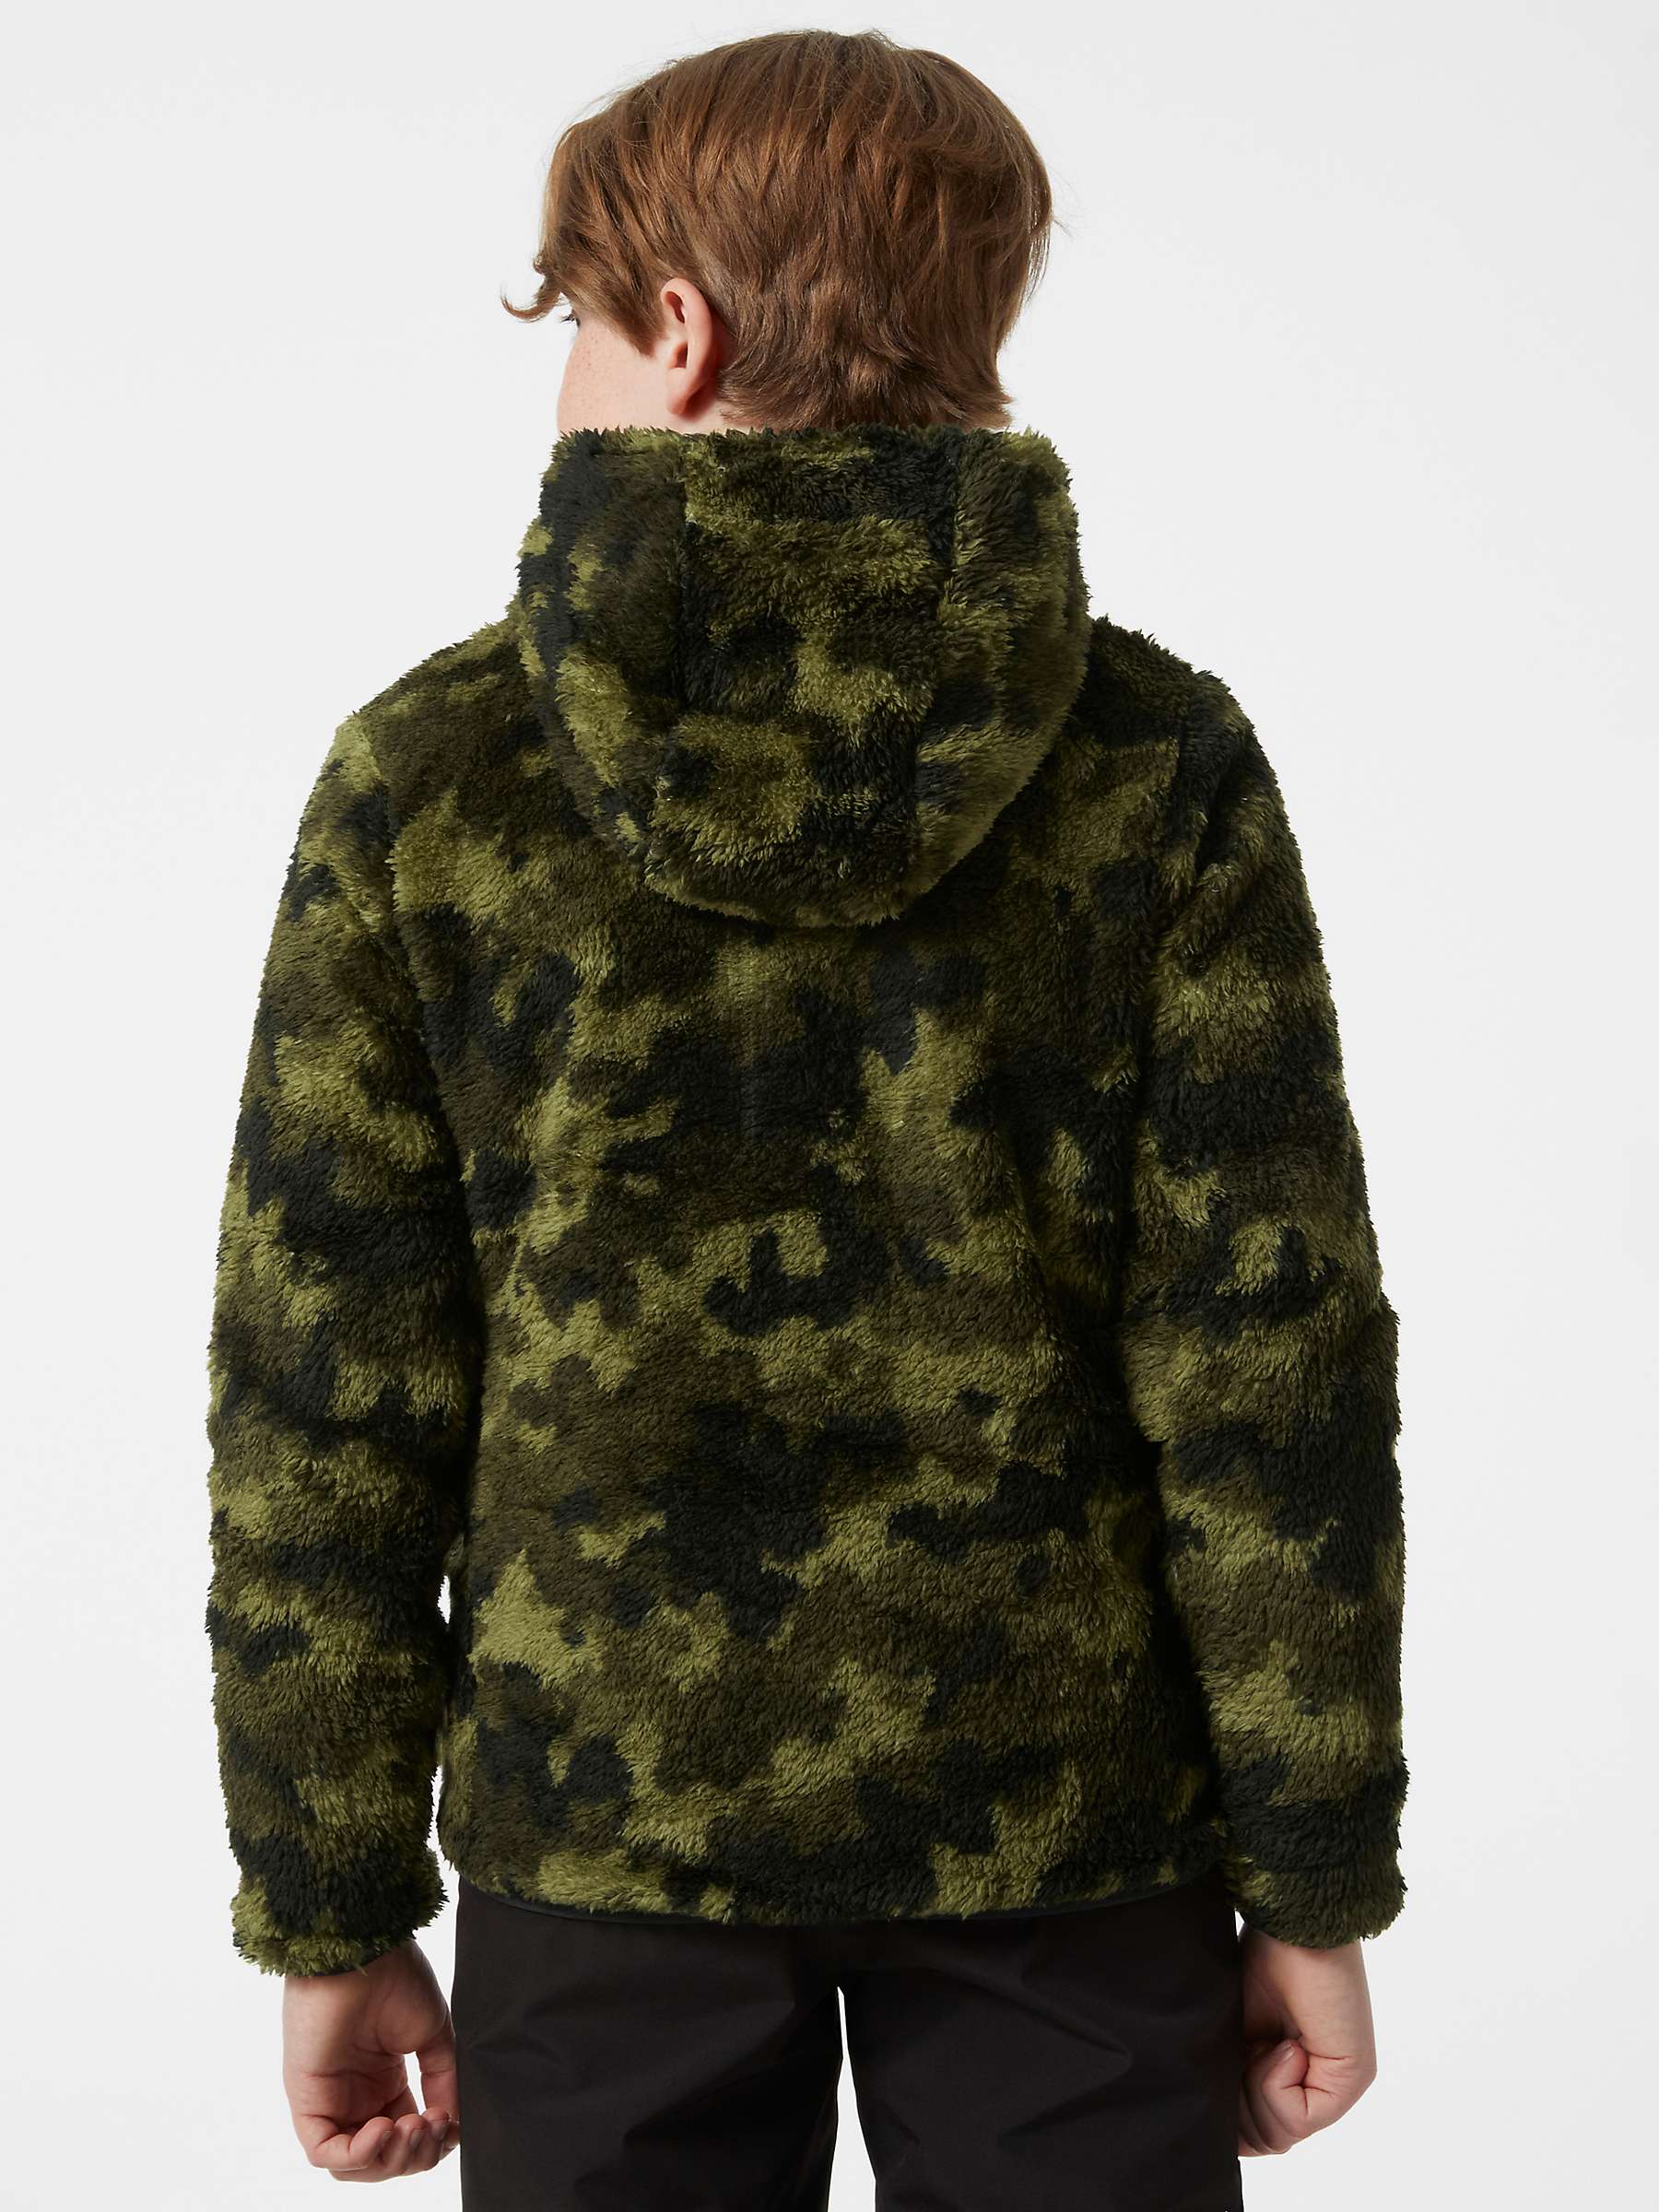 Buy Helly Hansen Kids' Reversible Fleece Lined Coat, Black/Green Online at johnlewis.com